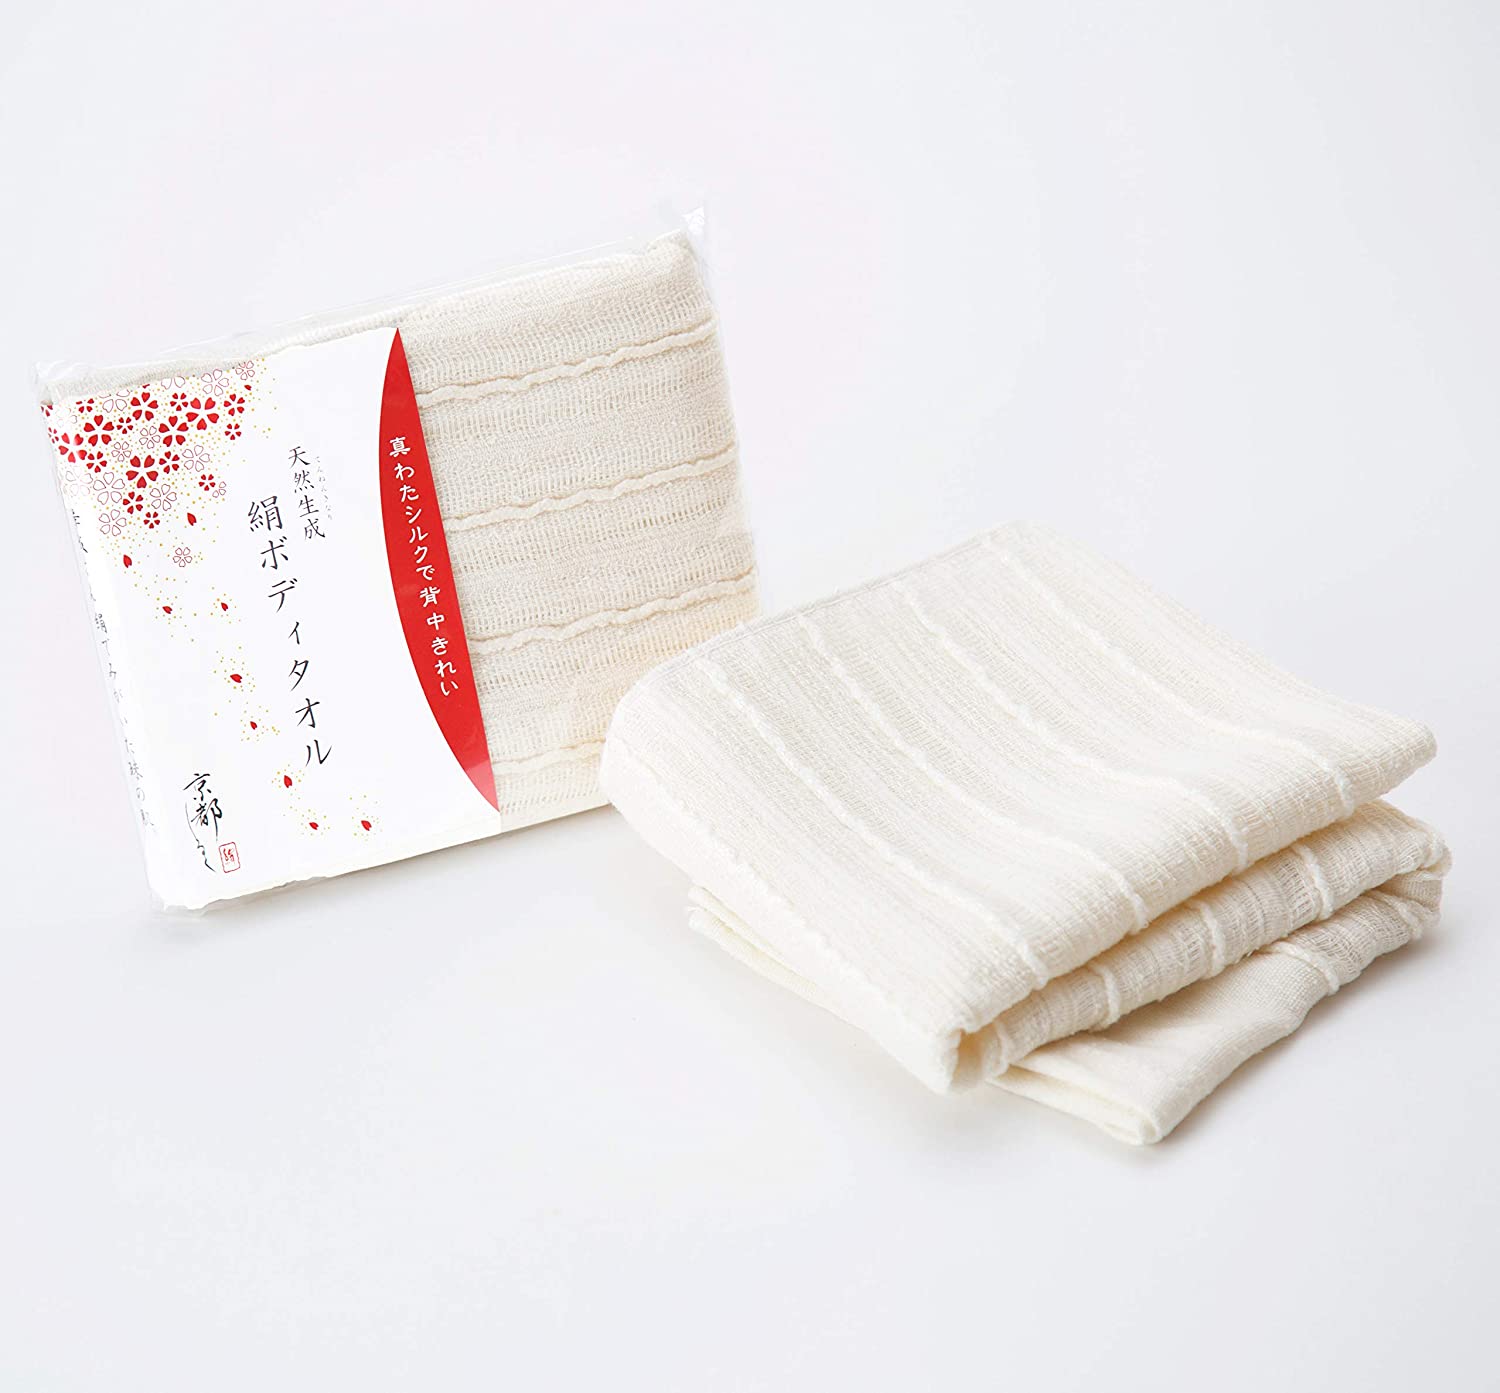 細かい繊維で毛穴の汚れも落としやすい絹製